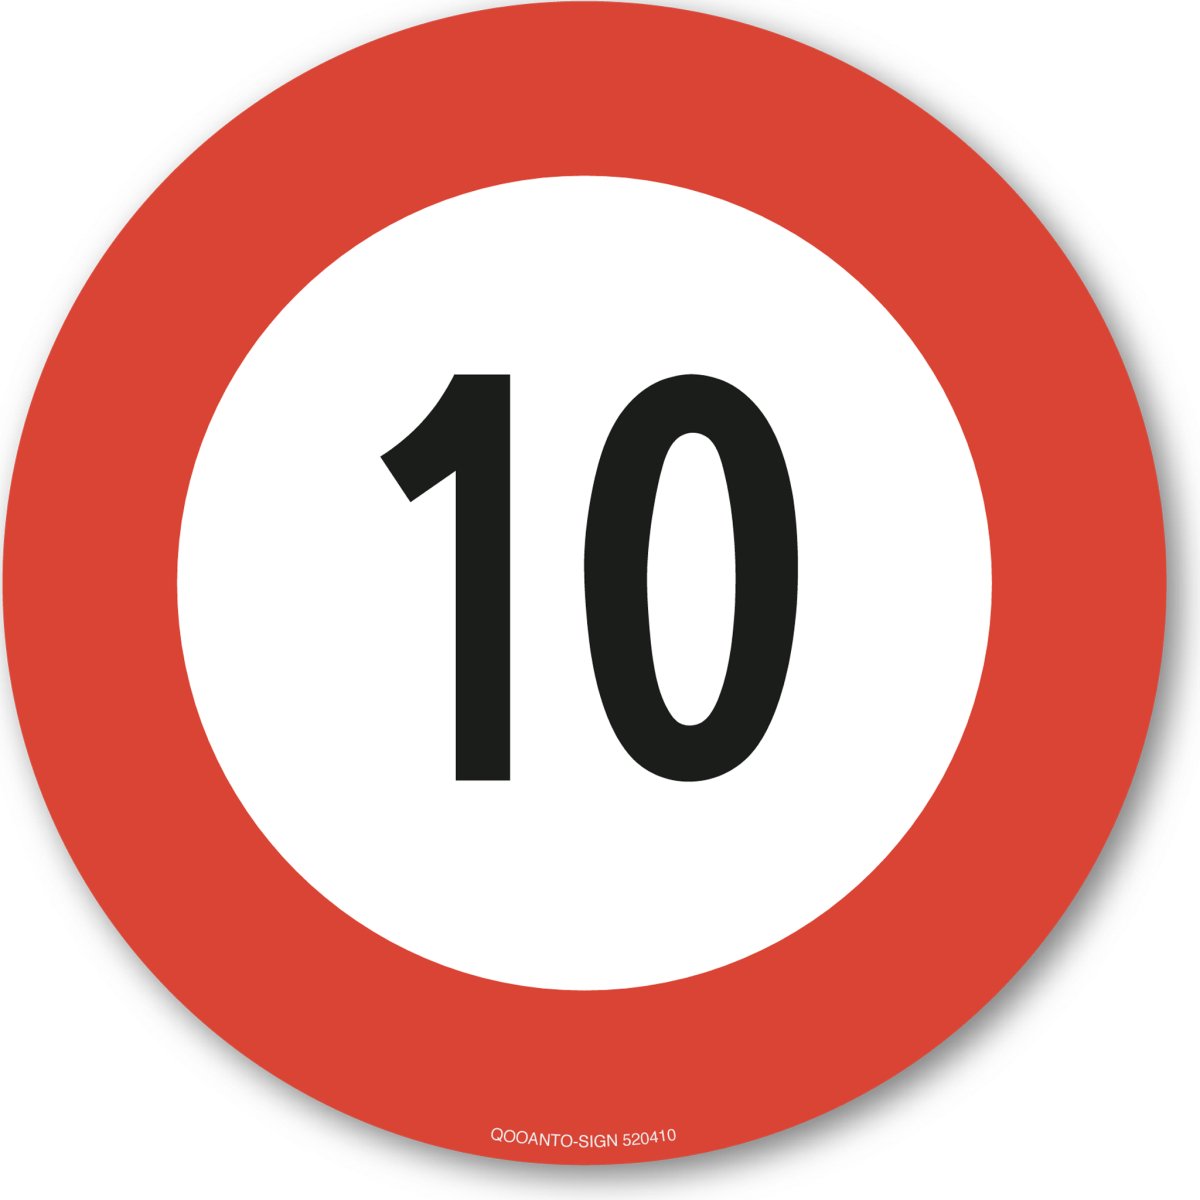 10 Höchstgeschwindigkeit Verkehrsschild oder Aufkleber aus Alu-Verbund oder Selbstklebefolie mit UV-Schutz - QOOANTO-SIGN